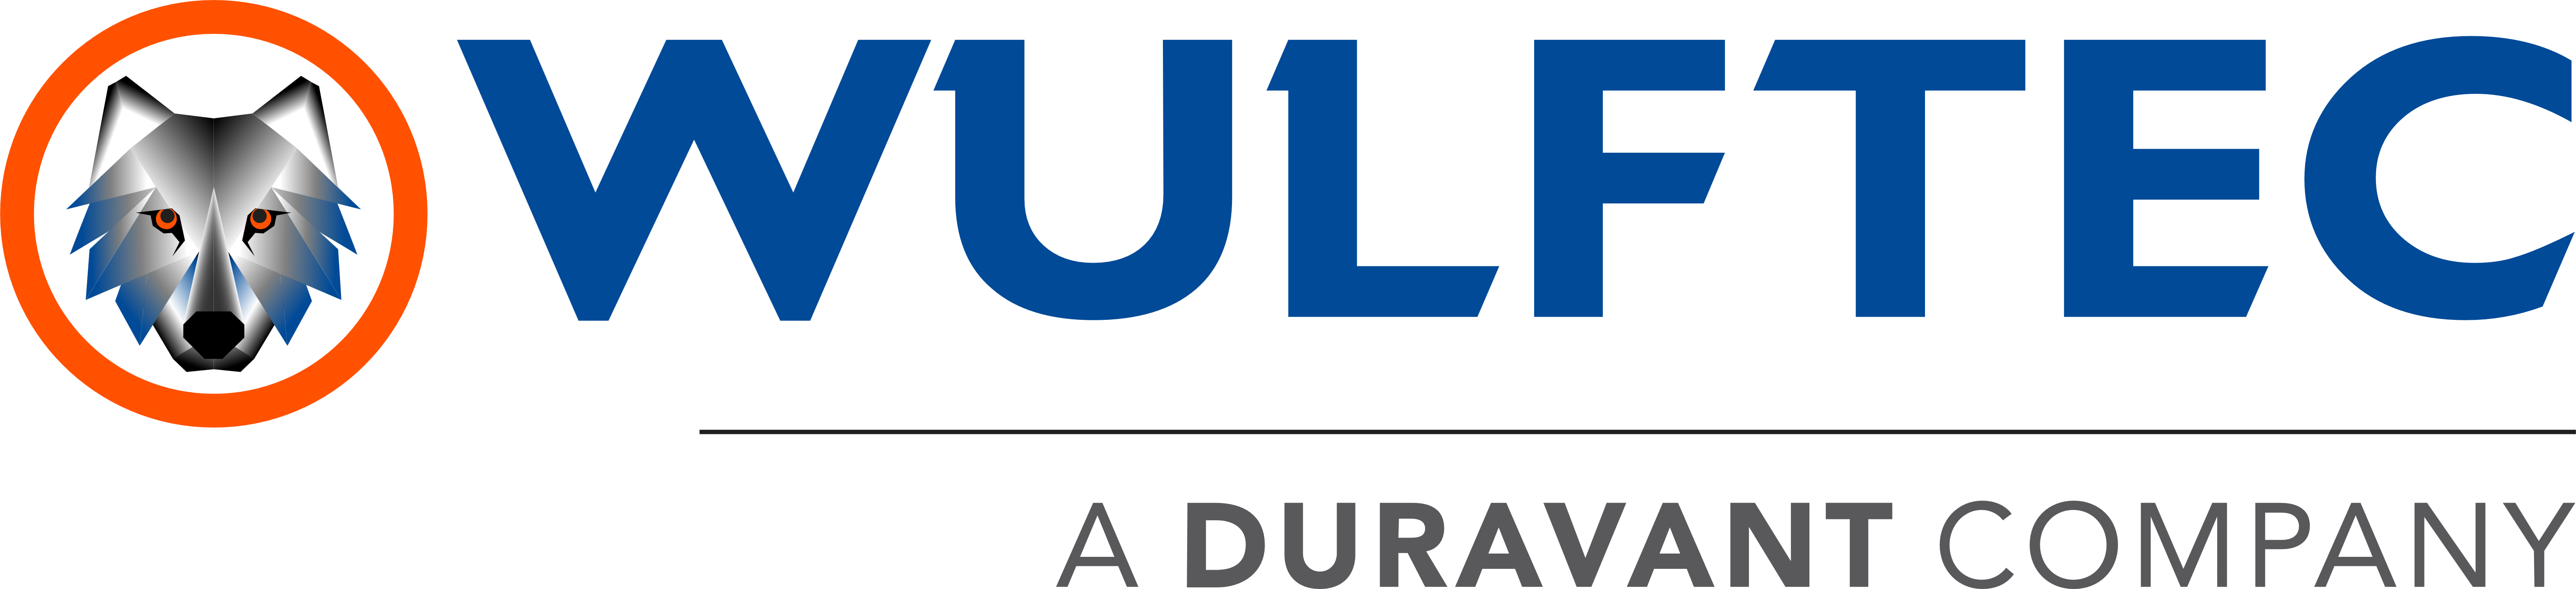 Logotipo de Wulftec